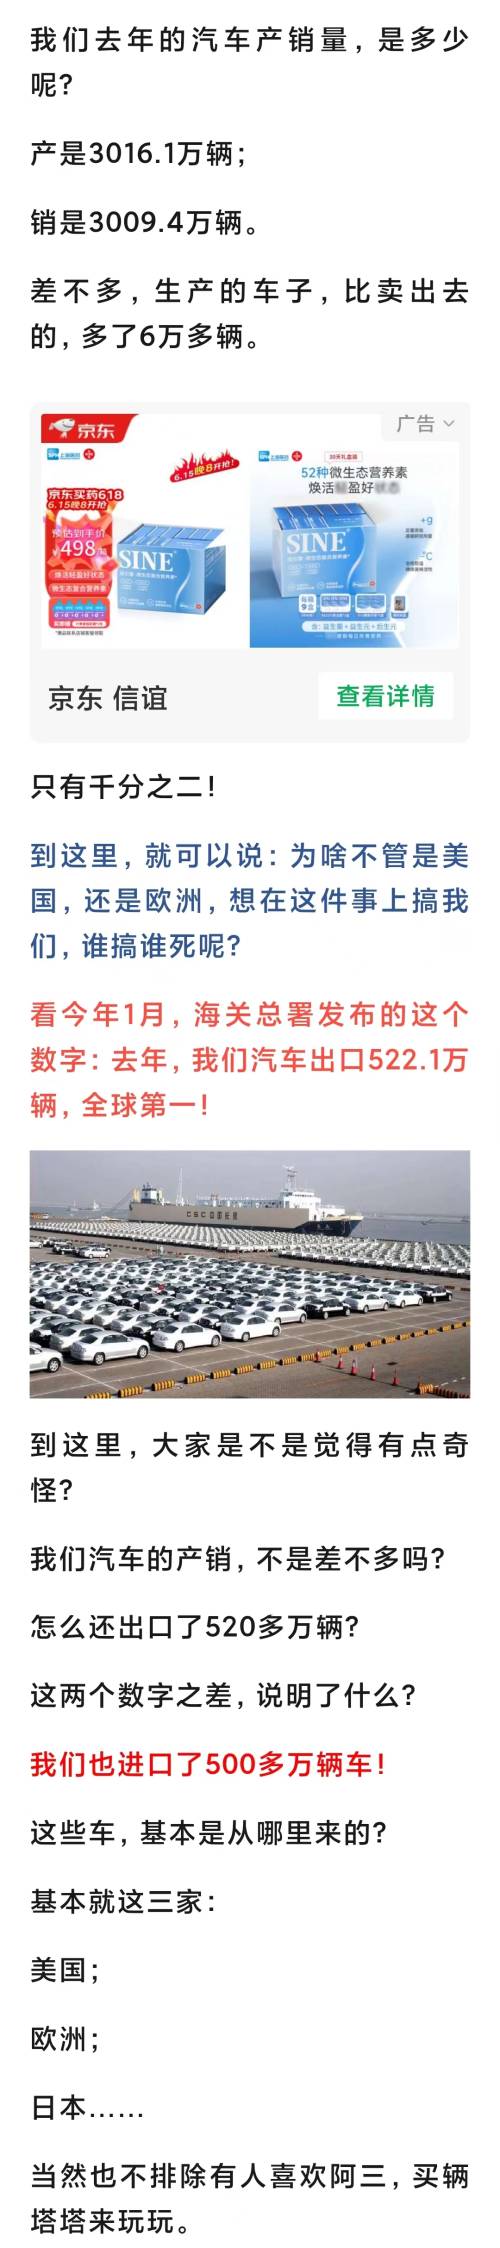 2023中国汽车产销量及进出口数据解析